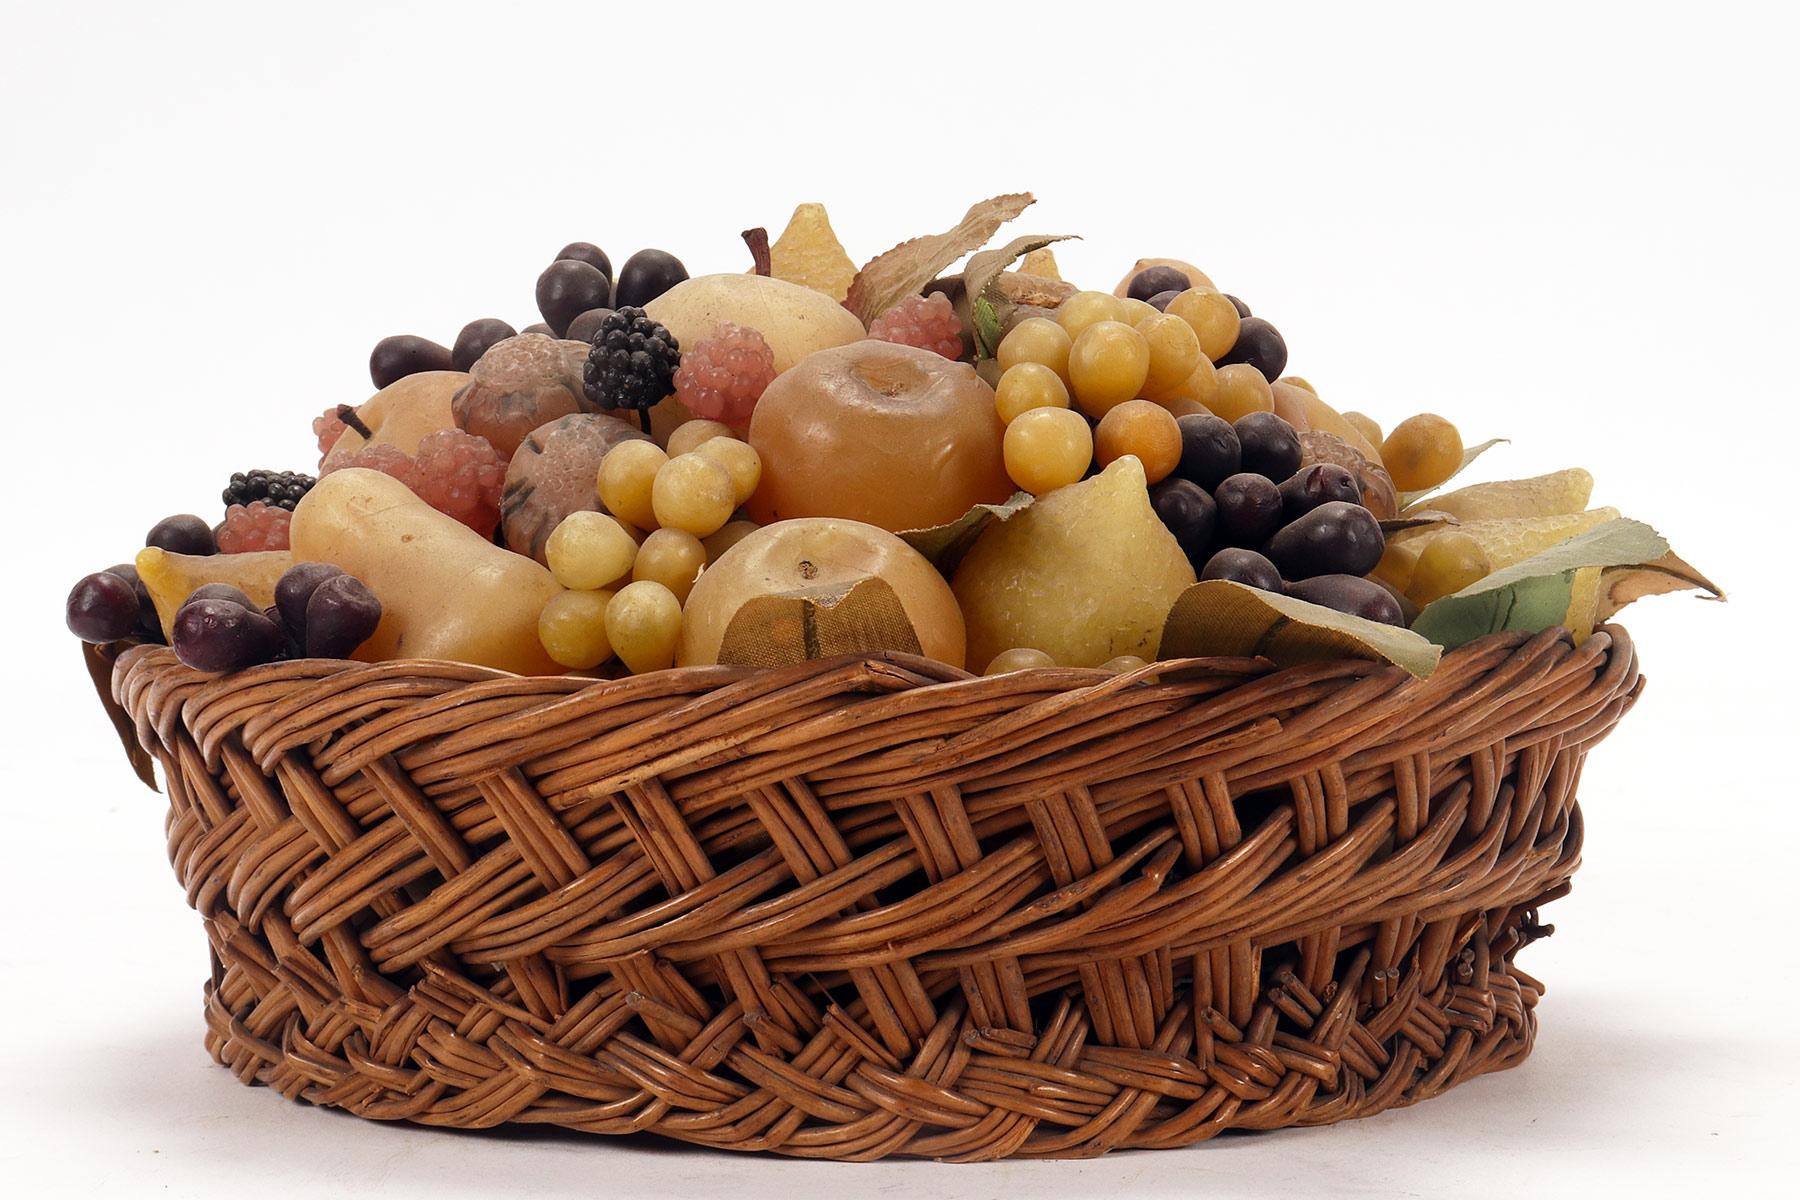 Ein seltener dekorativer Obstkorb aus Wachs. Der elegante Weidenkorb enthält ein Arrangement aus farbigen Wachsfrüchten. Die Zweige und Blätter sind aus Draht, Papier und farbigem Stoff gefertigt. Unter den Früchten finden wir Brombeeren, Birnen,